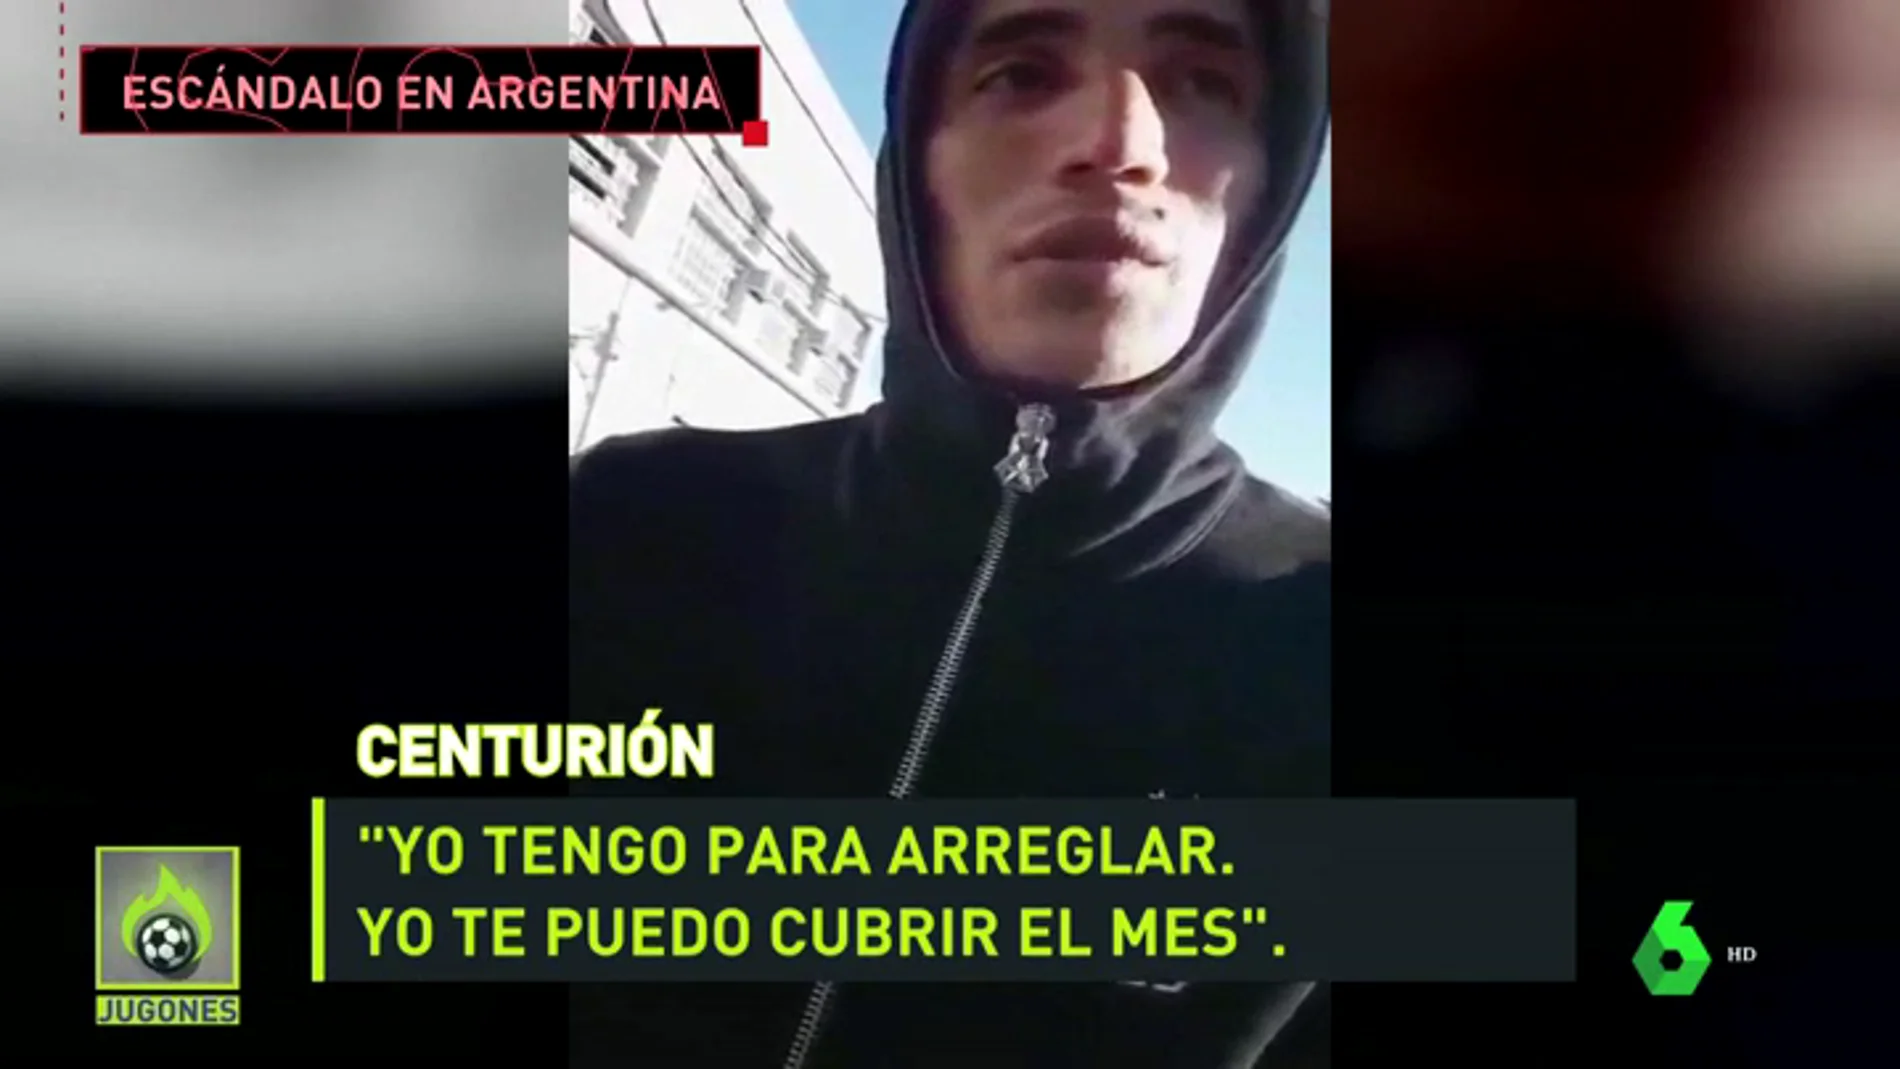 centurion_argentina